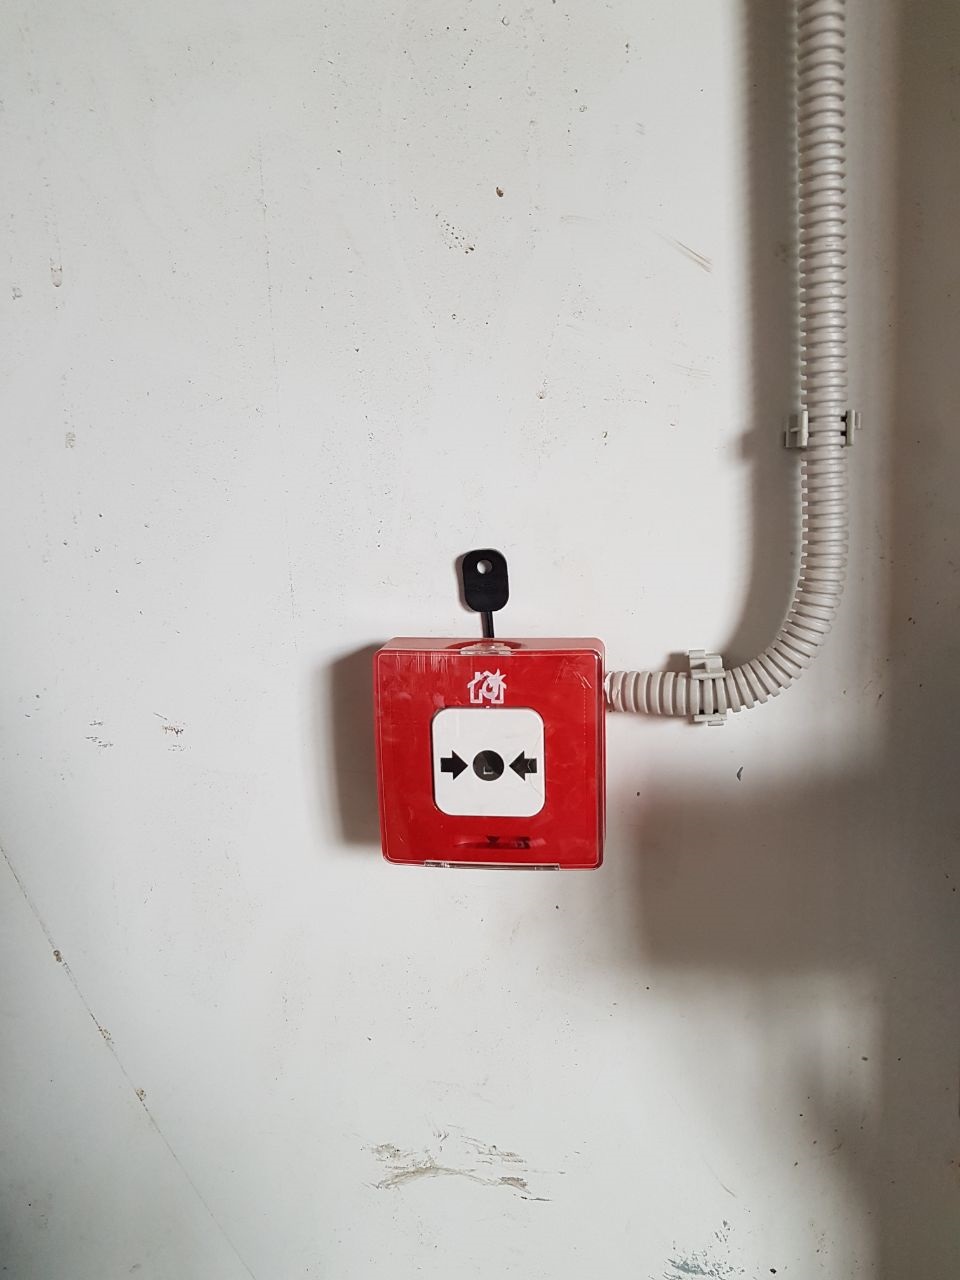 Неадресная (безадресная) система пожарной сигнализации